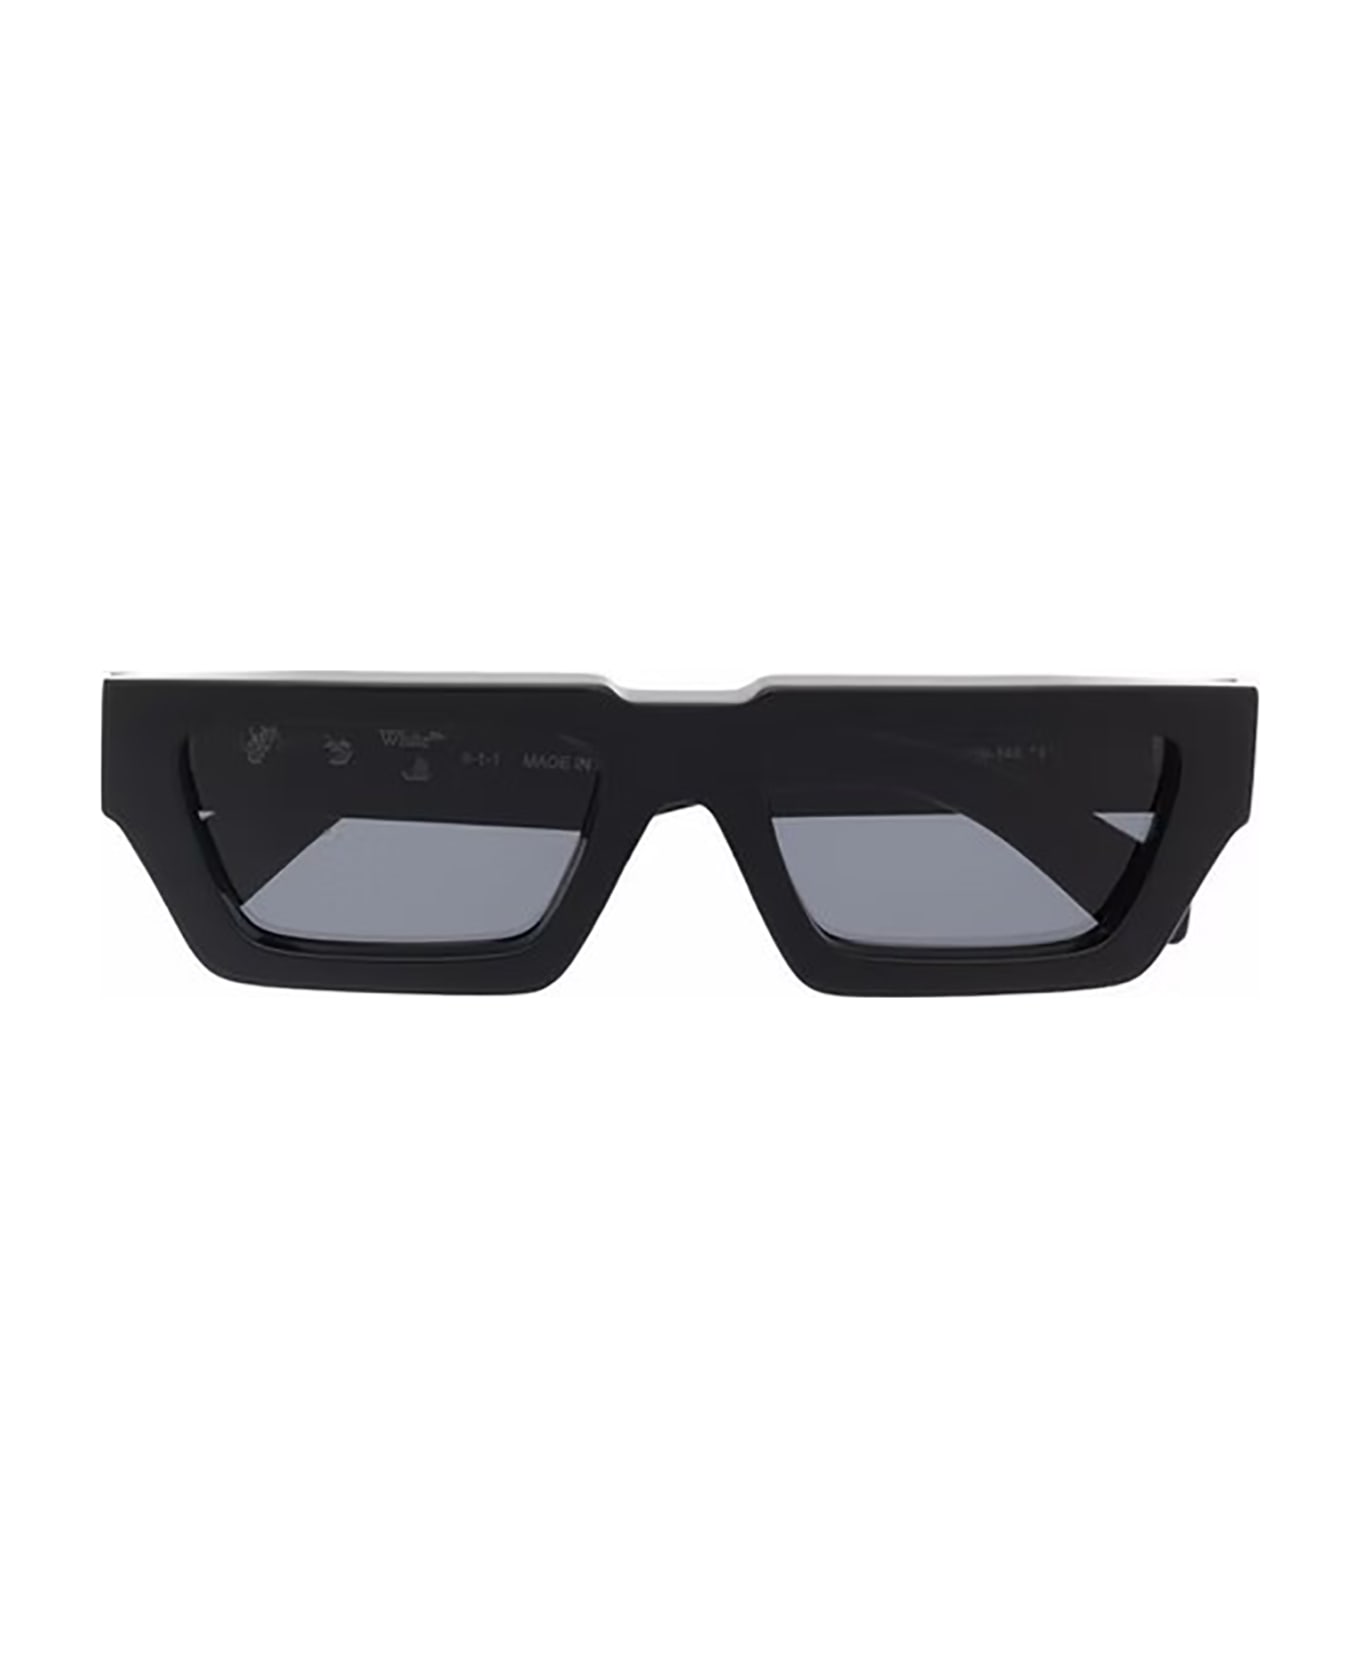 Off-White Manchester Sunglasses - BLACK DARK